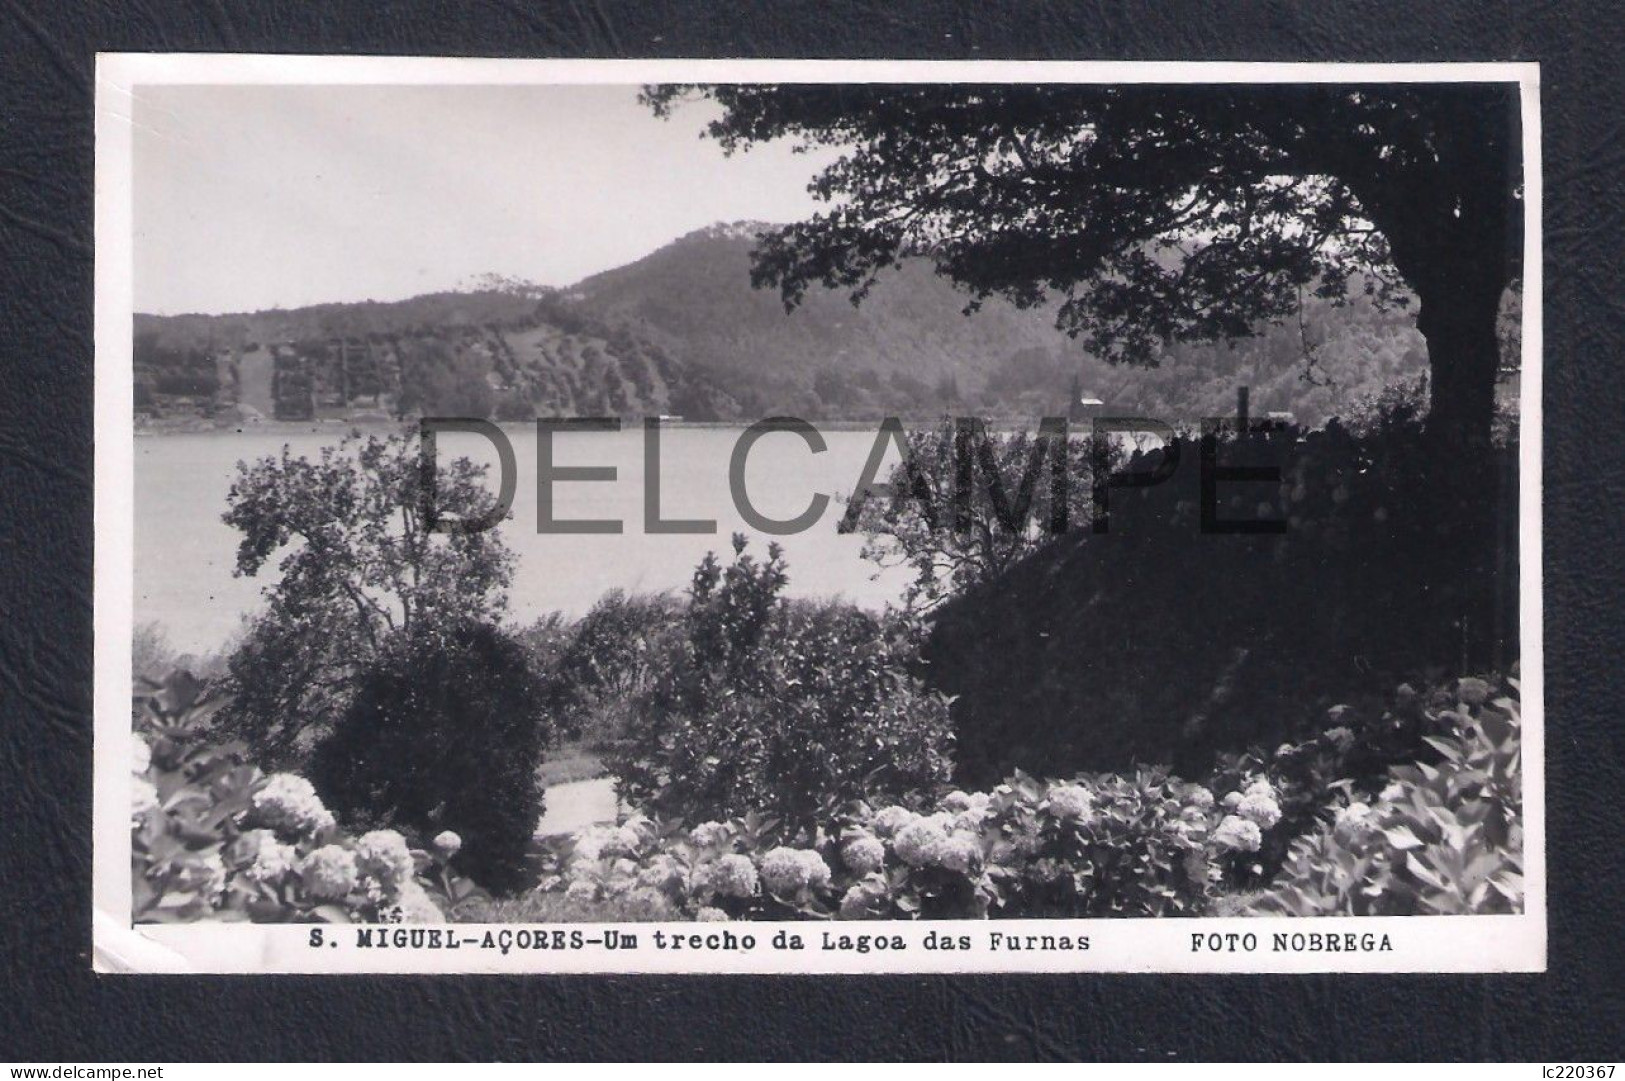 REAL PHOTO POSTCARD PORTUGAL AÇORES S. MIGUEL - UM TRECHO DA LAGOA DAS FURNAS - FOTO NOBREGA - 1950'S - Açores